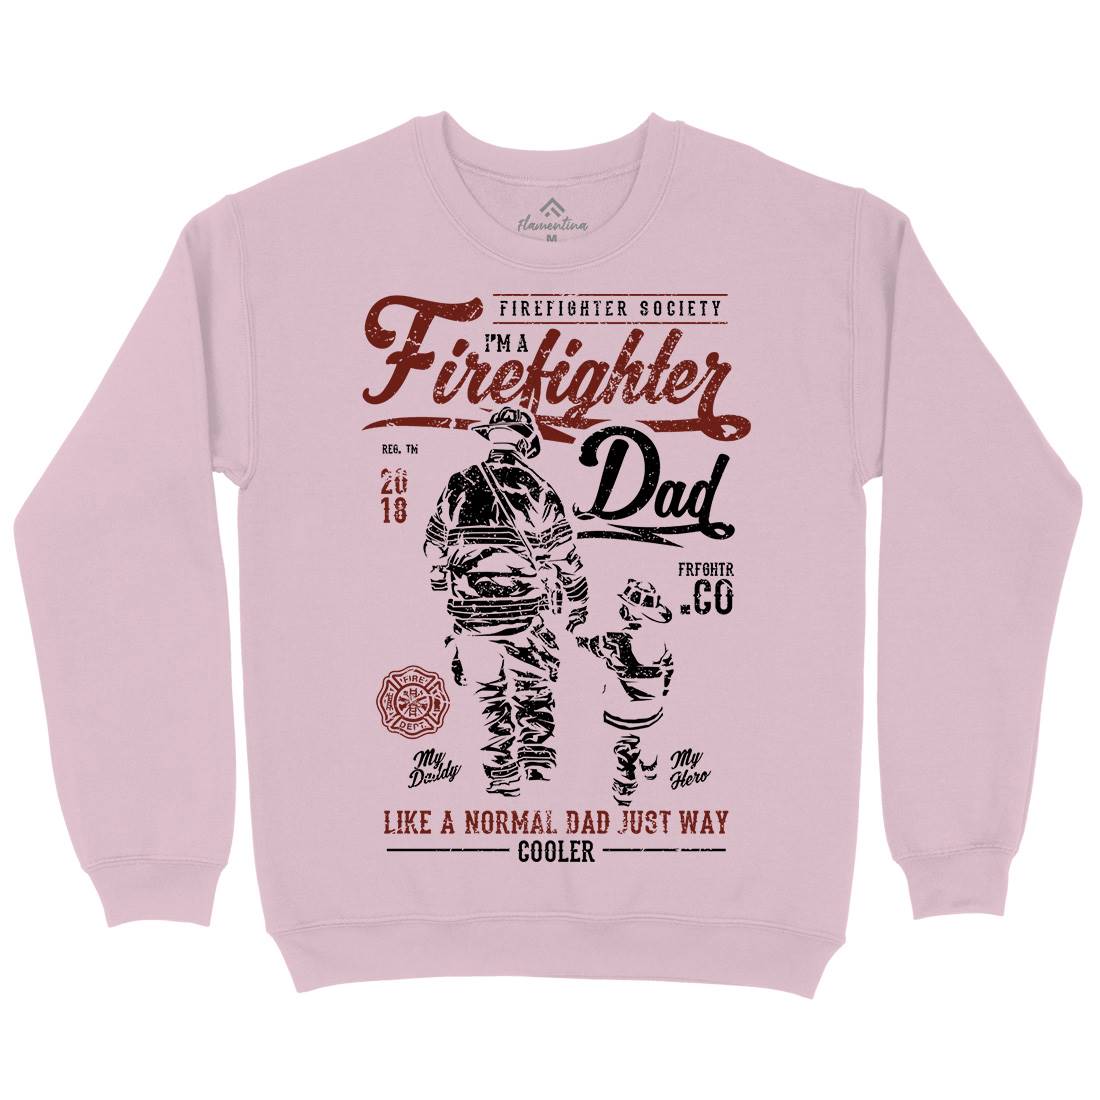 Dad Kids Crew Neck Sweatshirt Firefighters A657